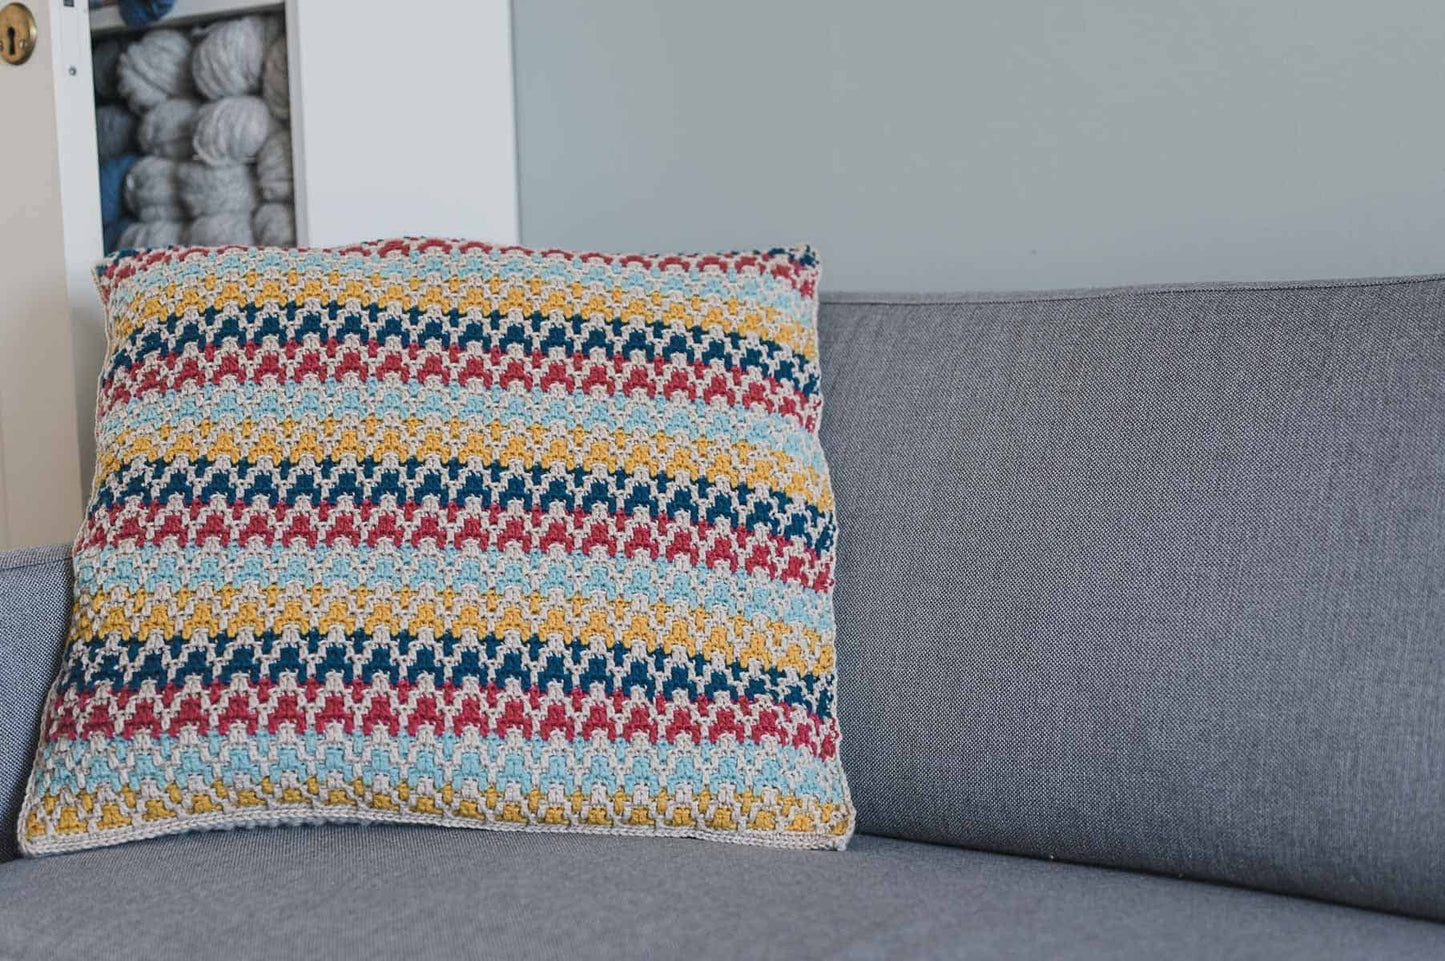 Mosaic Crochet Pillow - Crochet Pattern